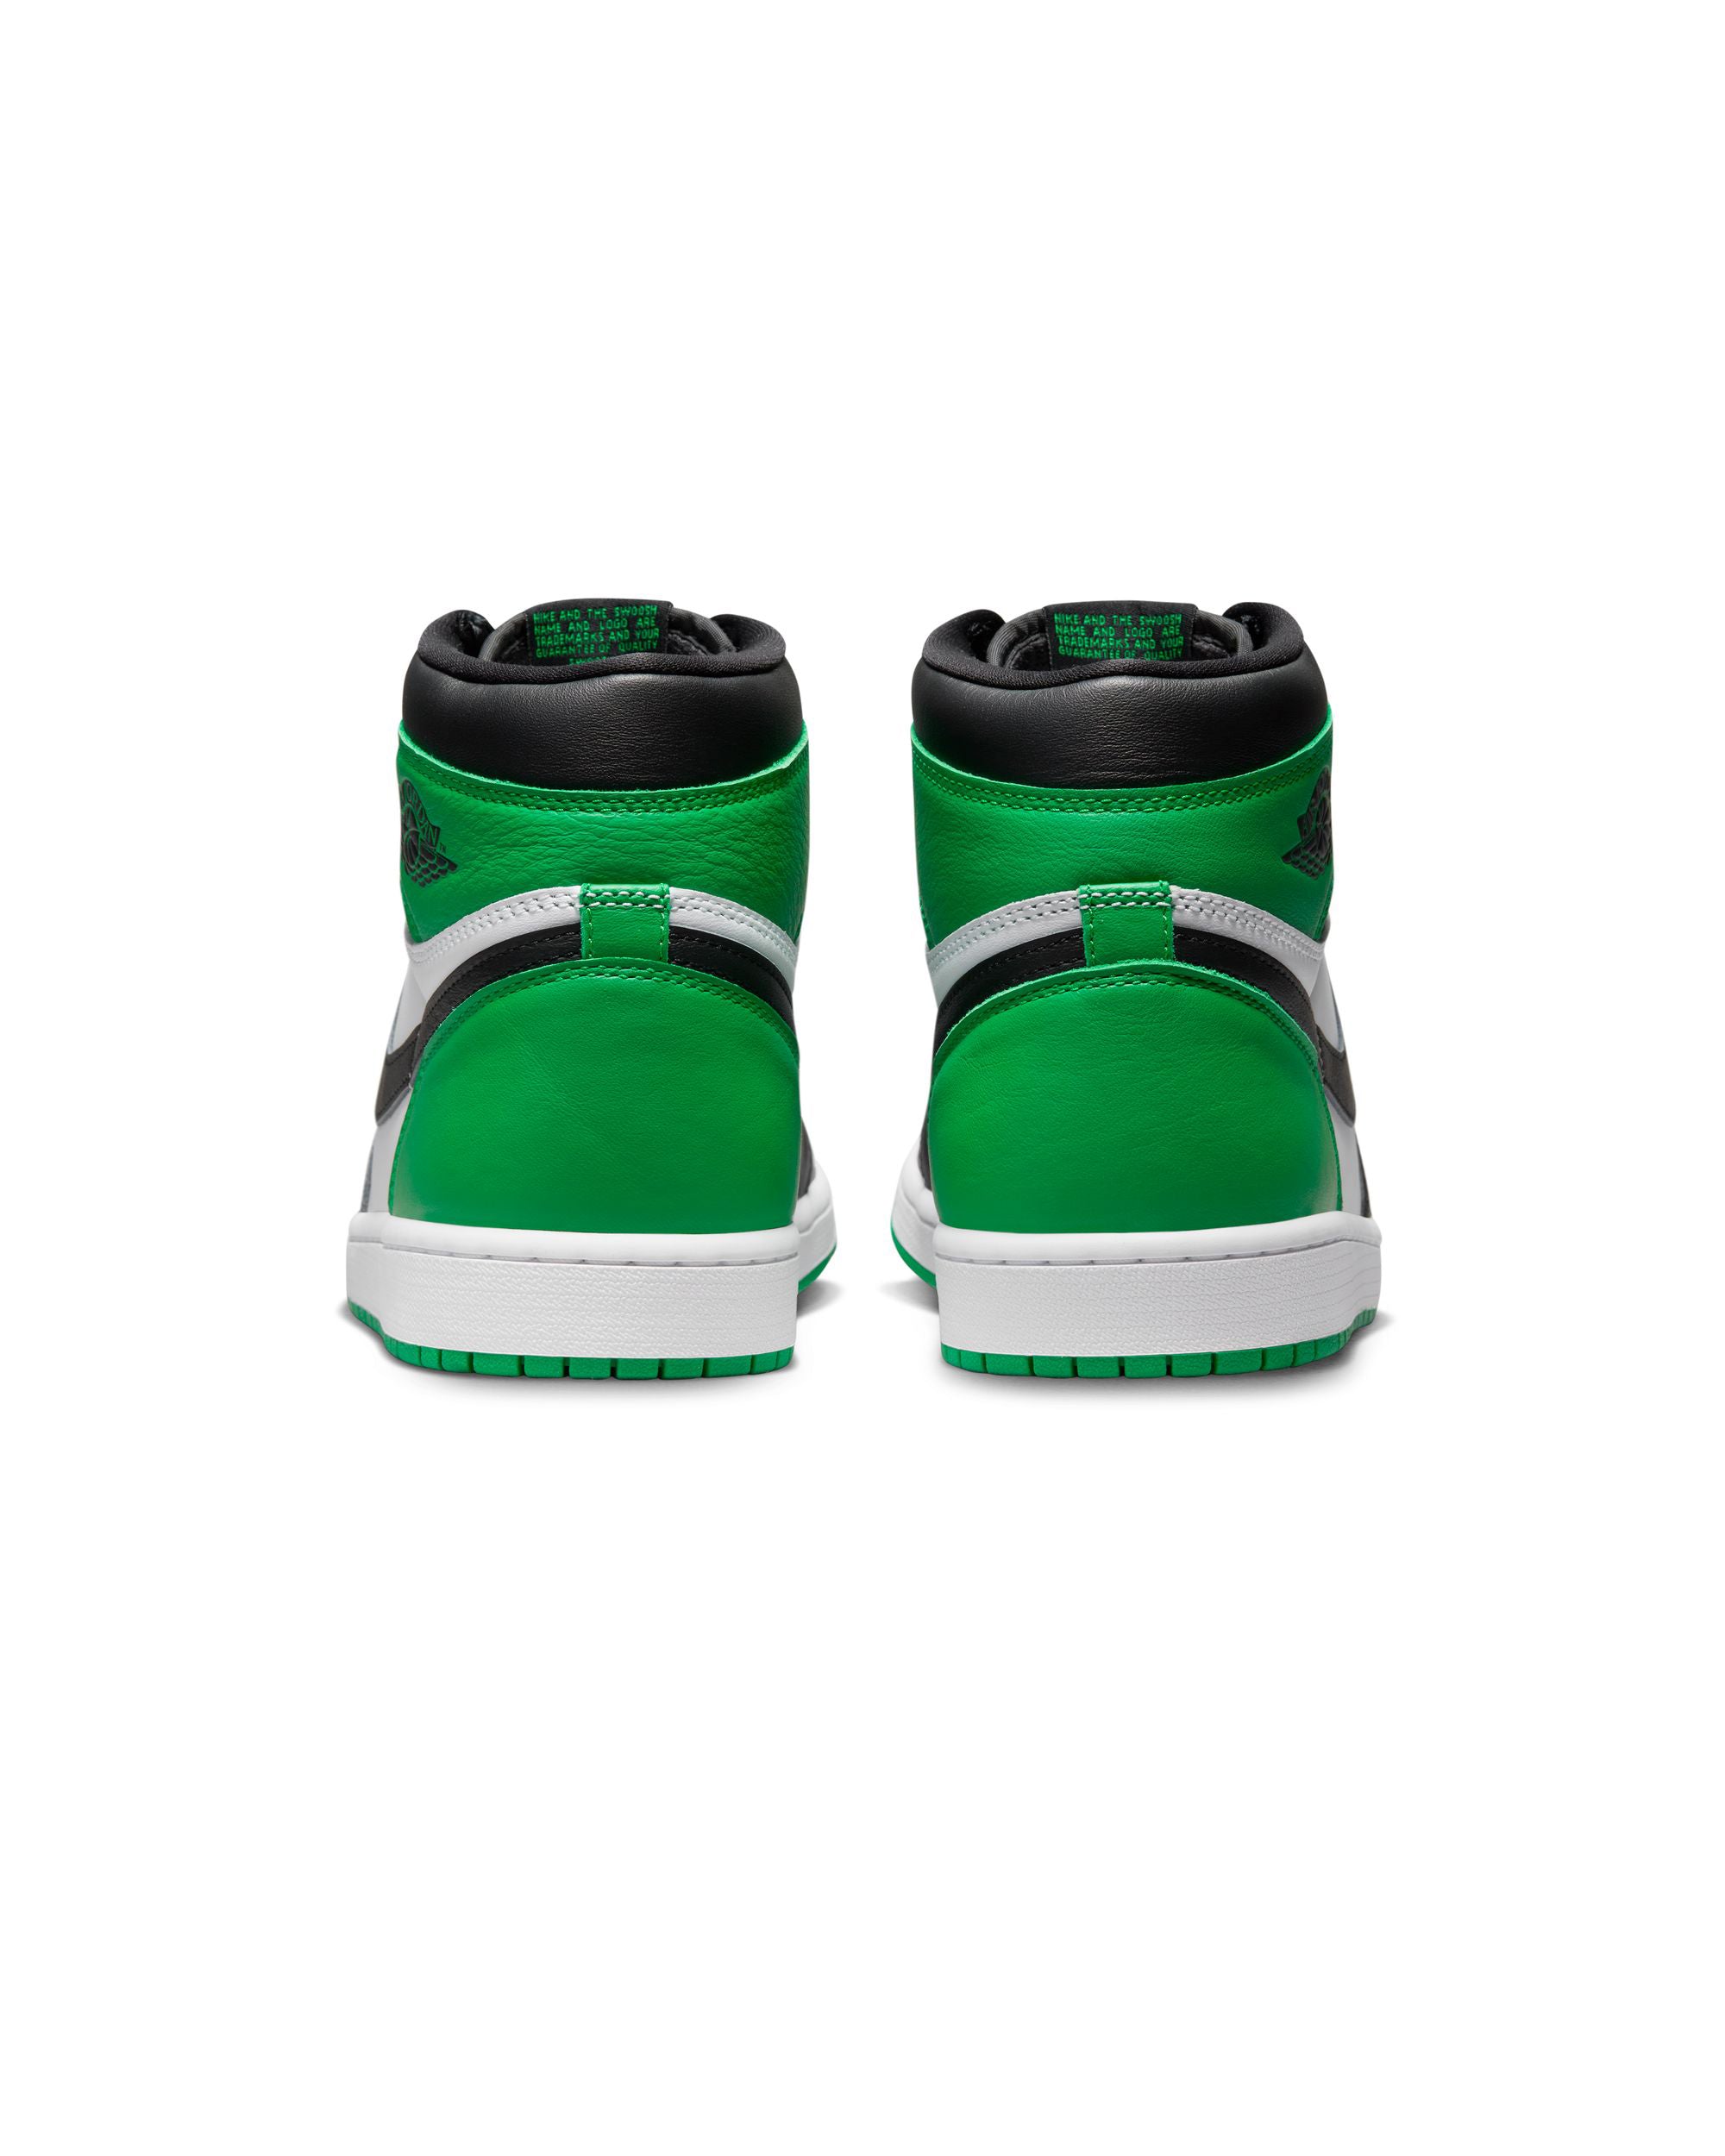 Air Jordan 1 Retro High OG - Black / Lucky Green / White